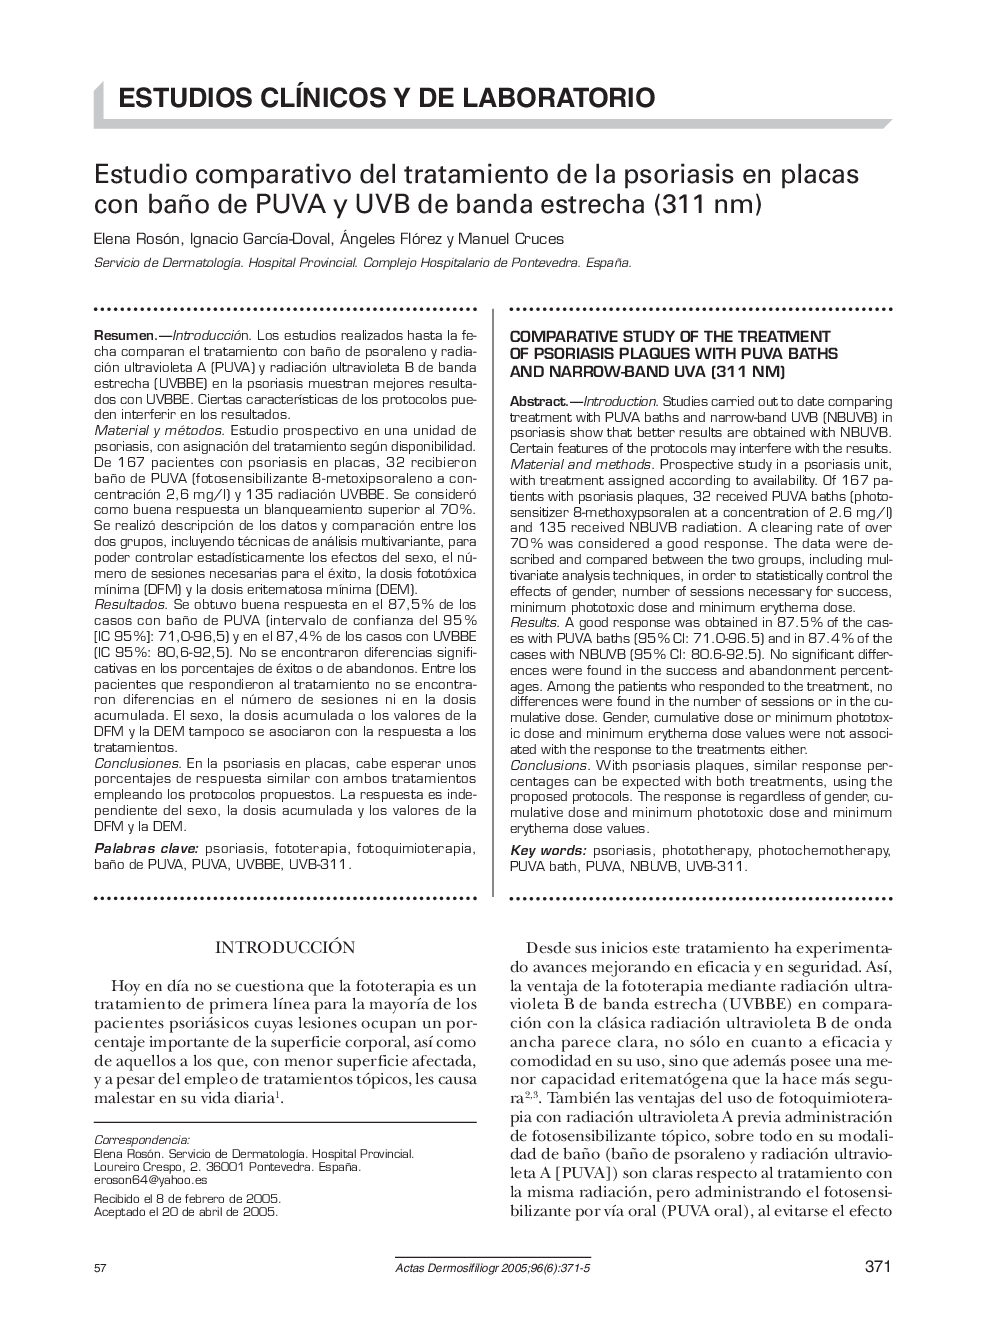 Estudio comparativo del tratamiento de la psoriasis en placas con baño de PUVA y UVB de banda estrecha (311 nm)